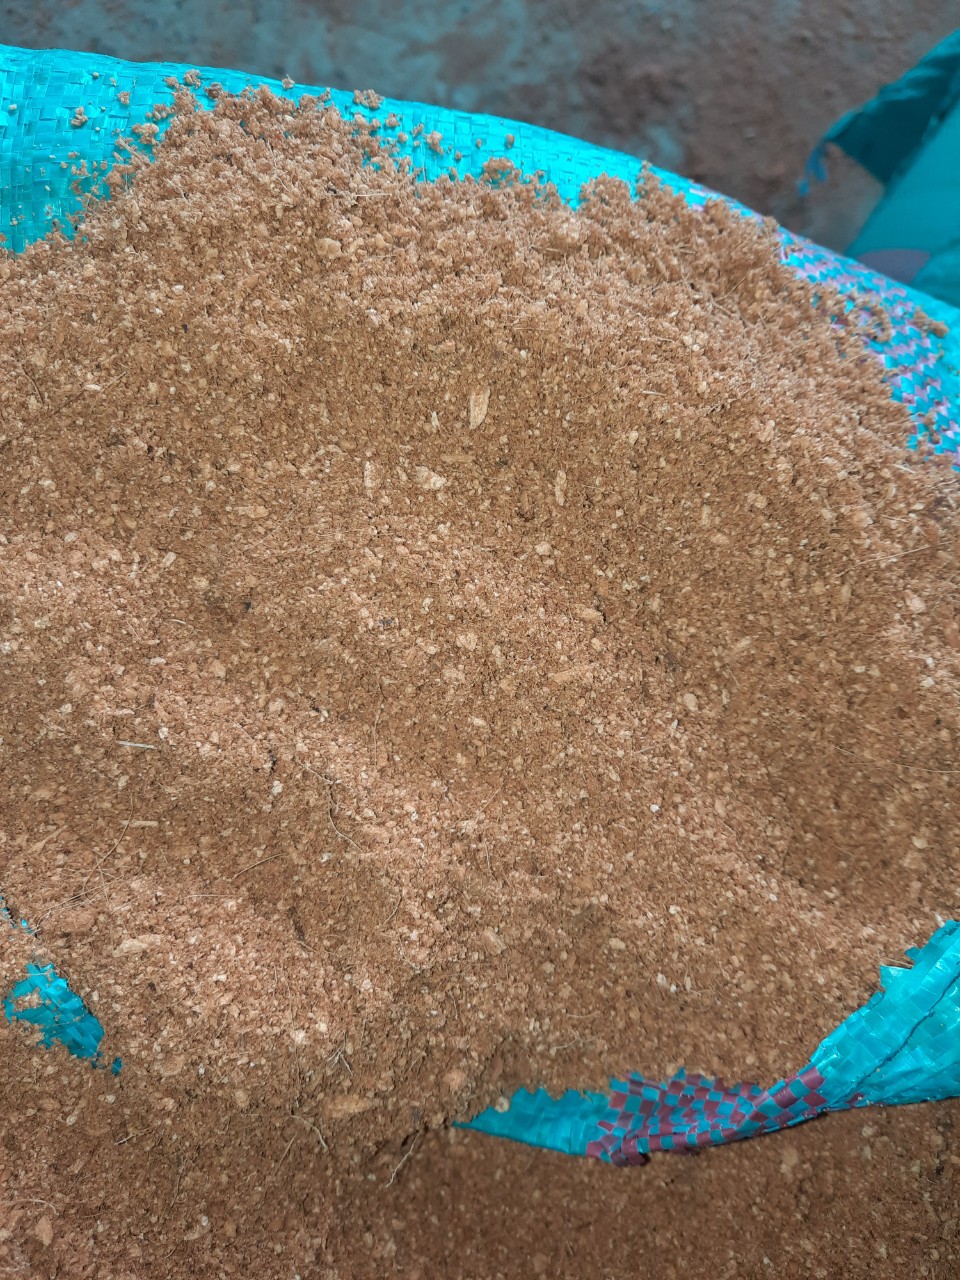 Mùn sàn mịn dùng trong vườn ươm, gieo mạ - Mụn Dừa, Sơ Dừa Trần Vinh - Cơ Sở Dừa Trần Vinh